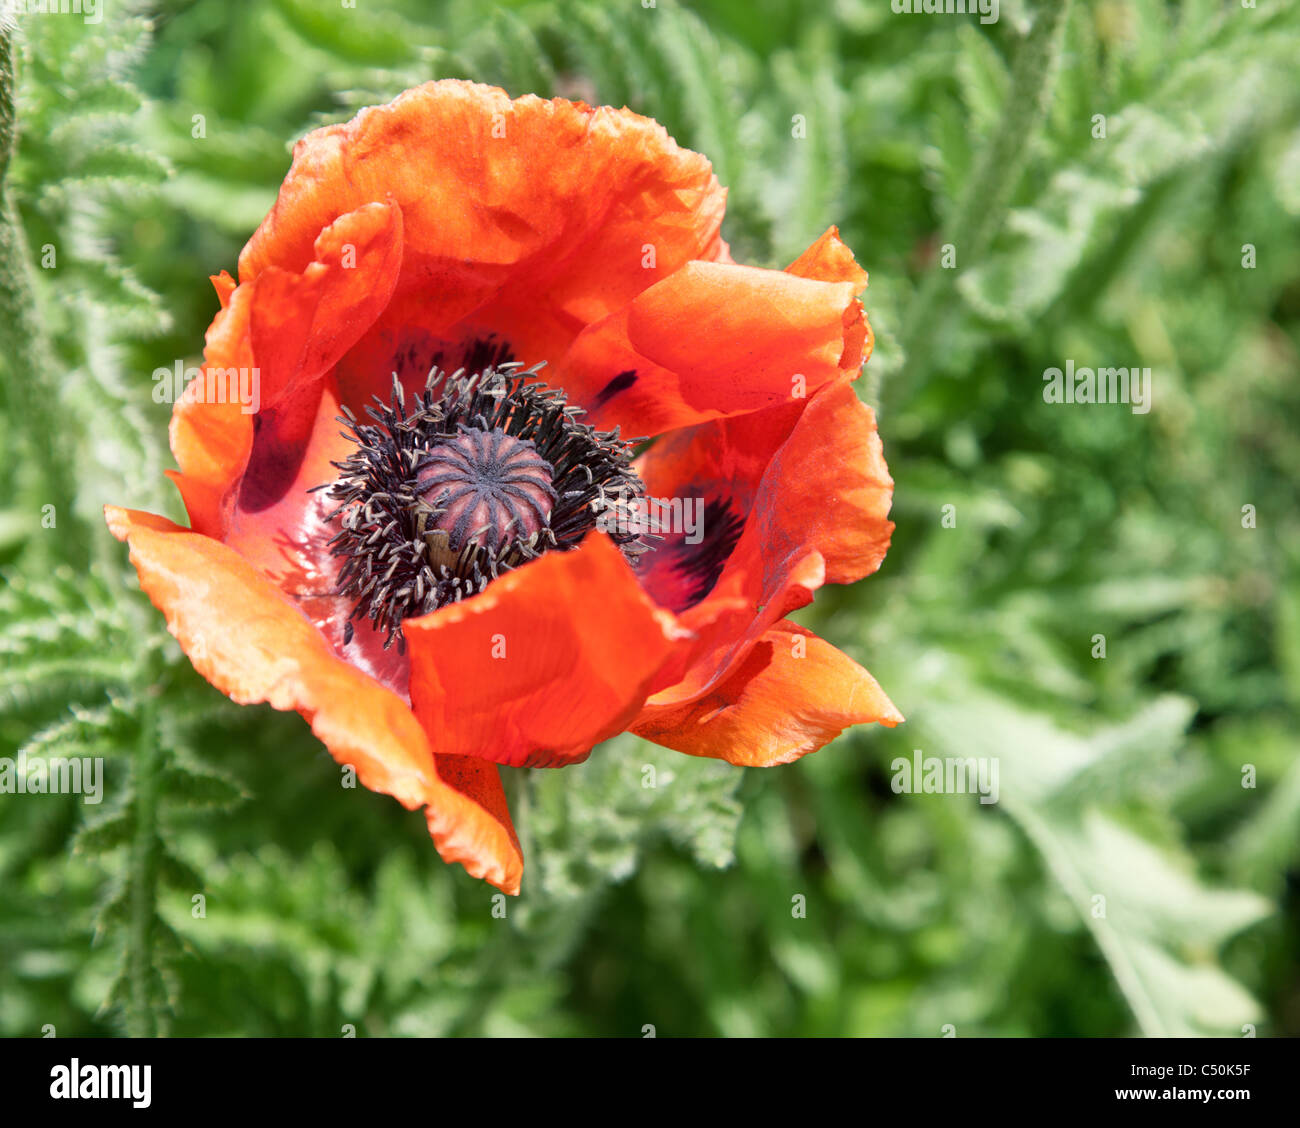 Close up shot of tender poppy flower. Stock Photo